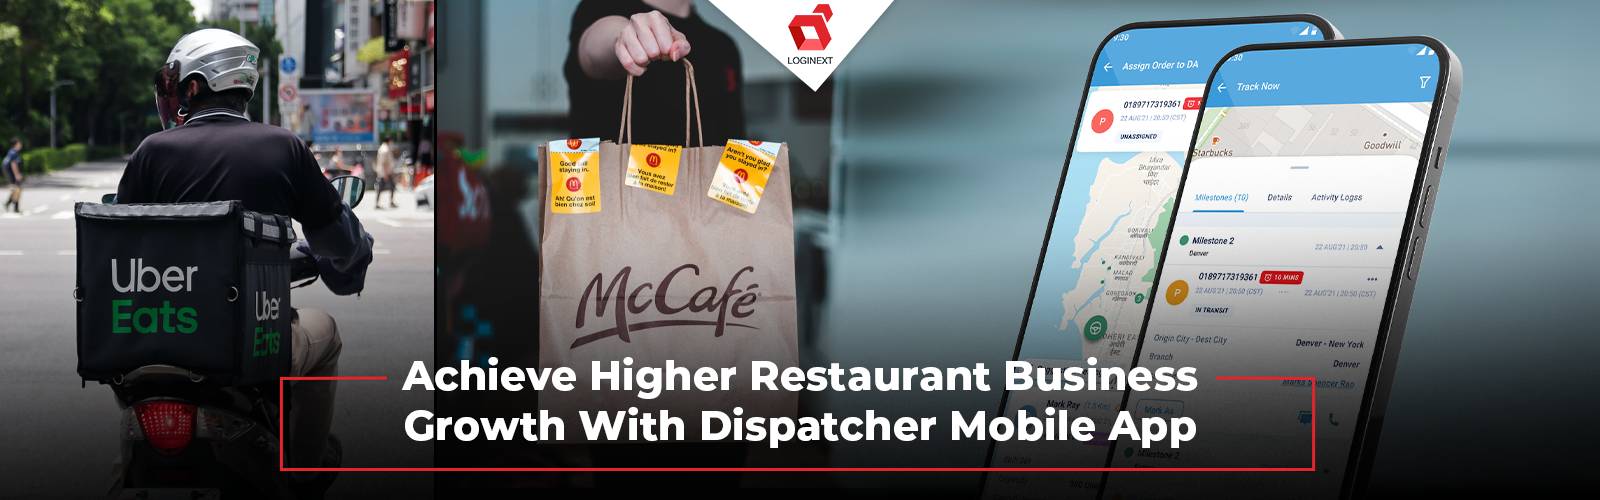 با اپلیکیشن موبایل Dispatcher به رشد قابل توجهی در کسب و کار رستوران برسید